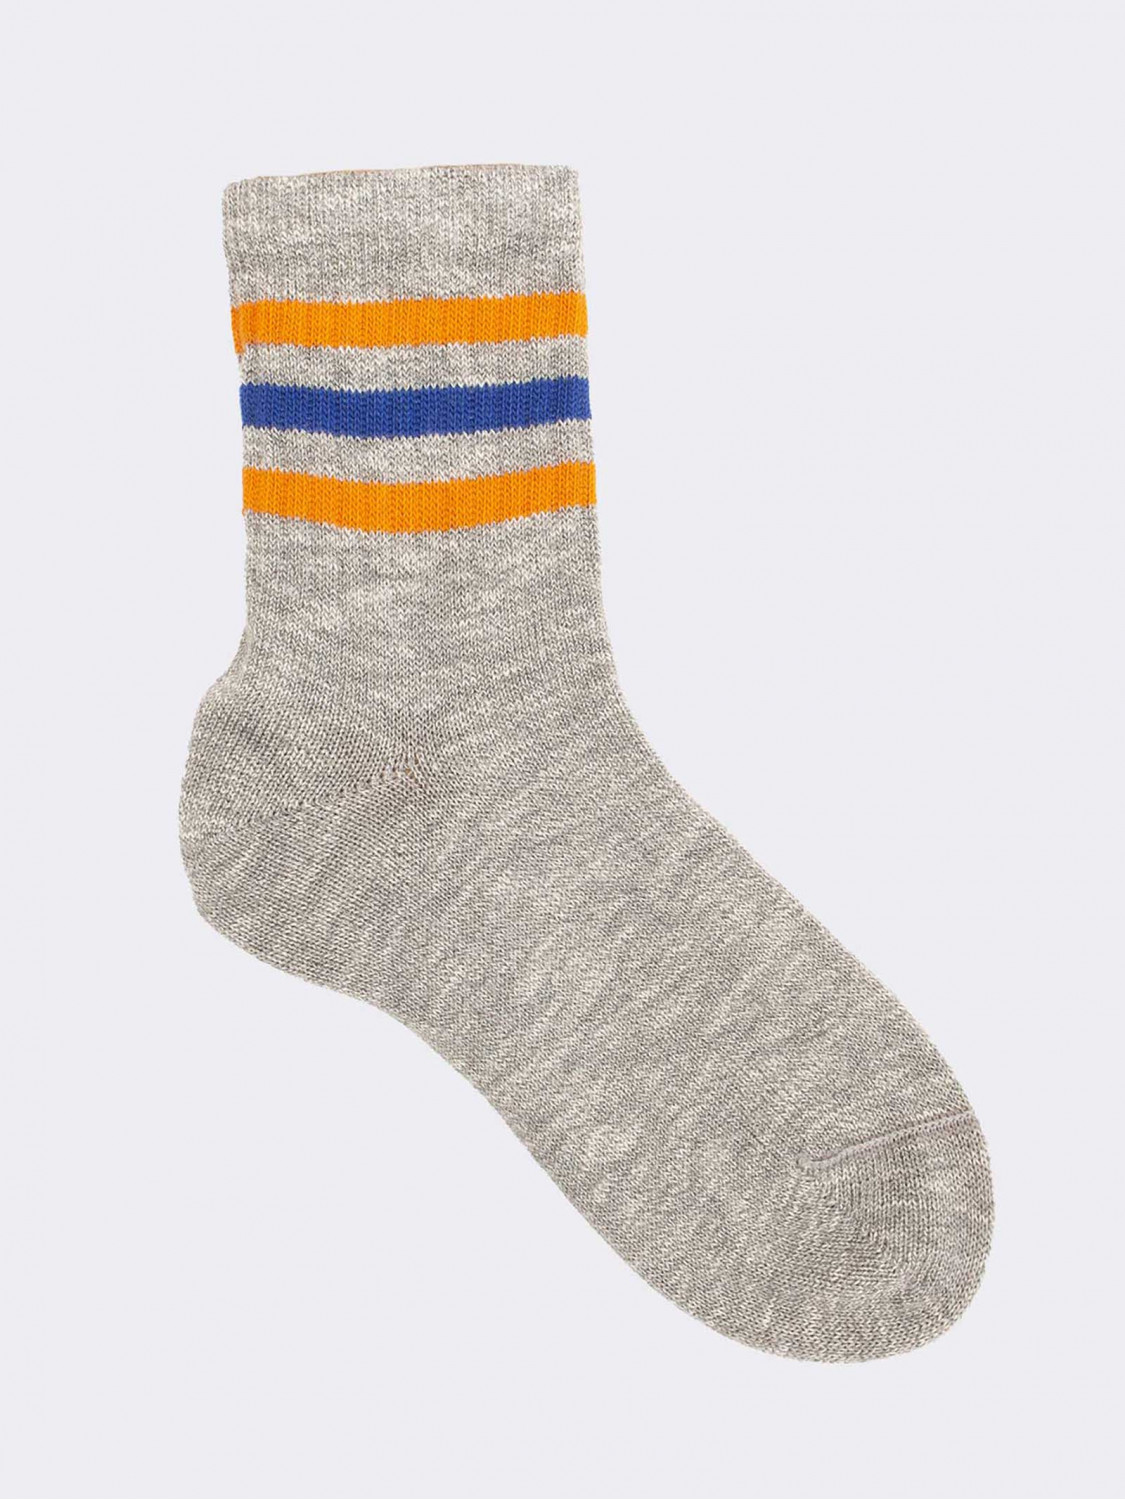 Boston Pattern Short Socks in Cotton